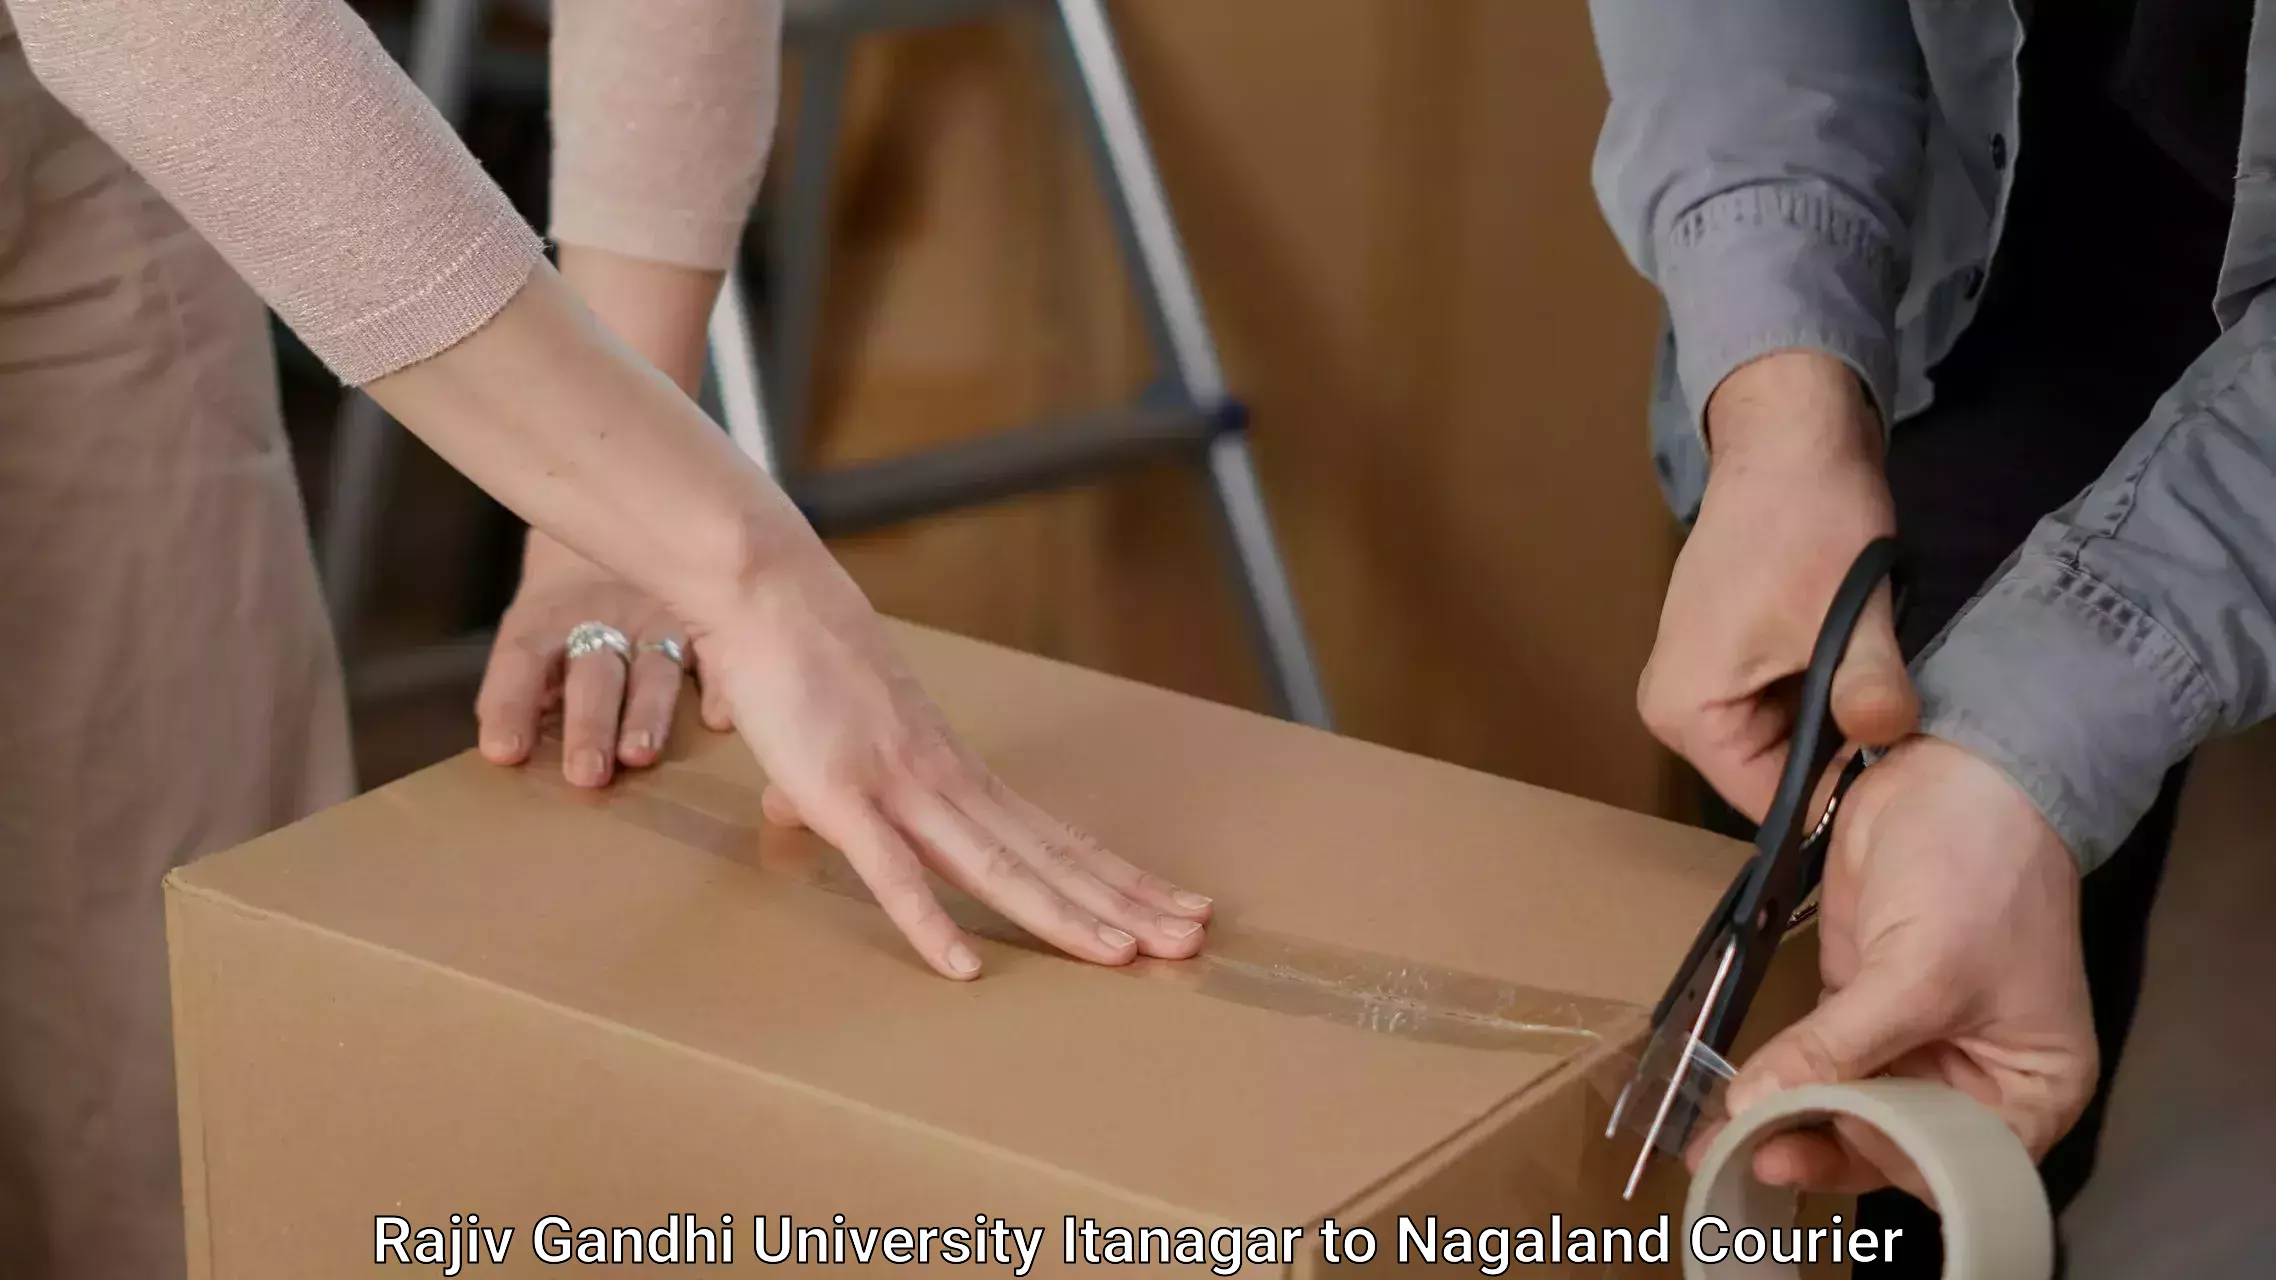 Furniture moving assistance Rajiv Gandhi University Itanagar to Mon